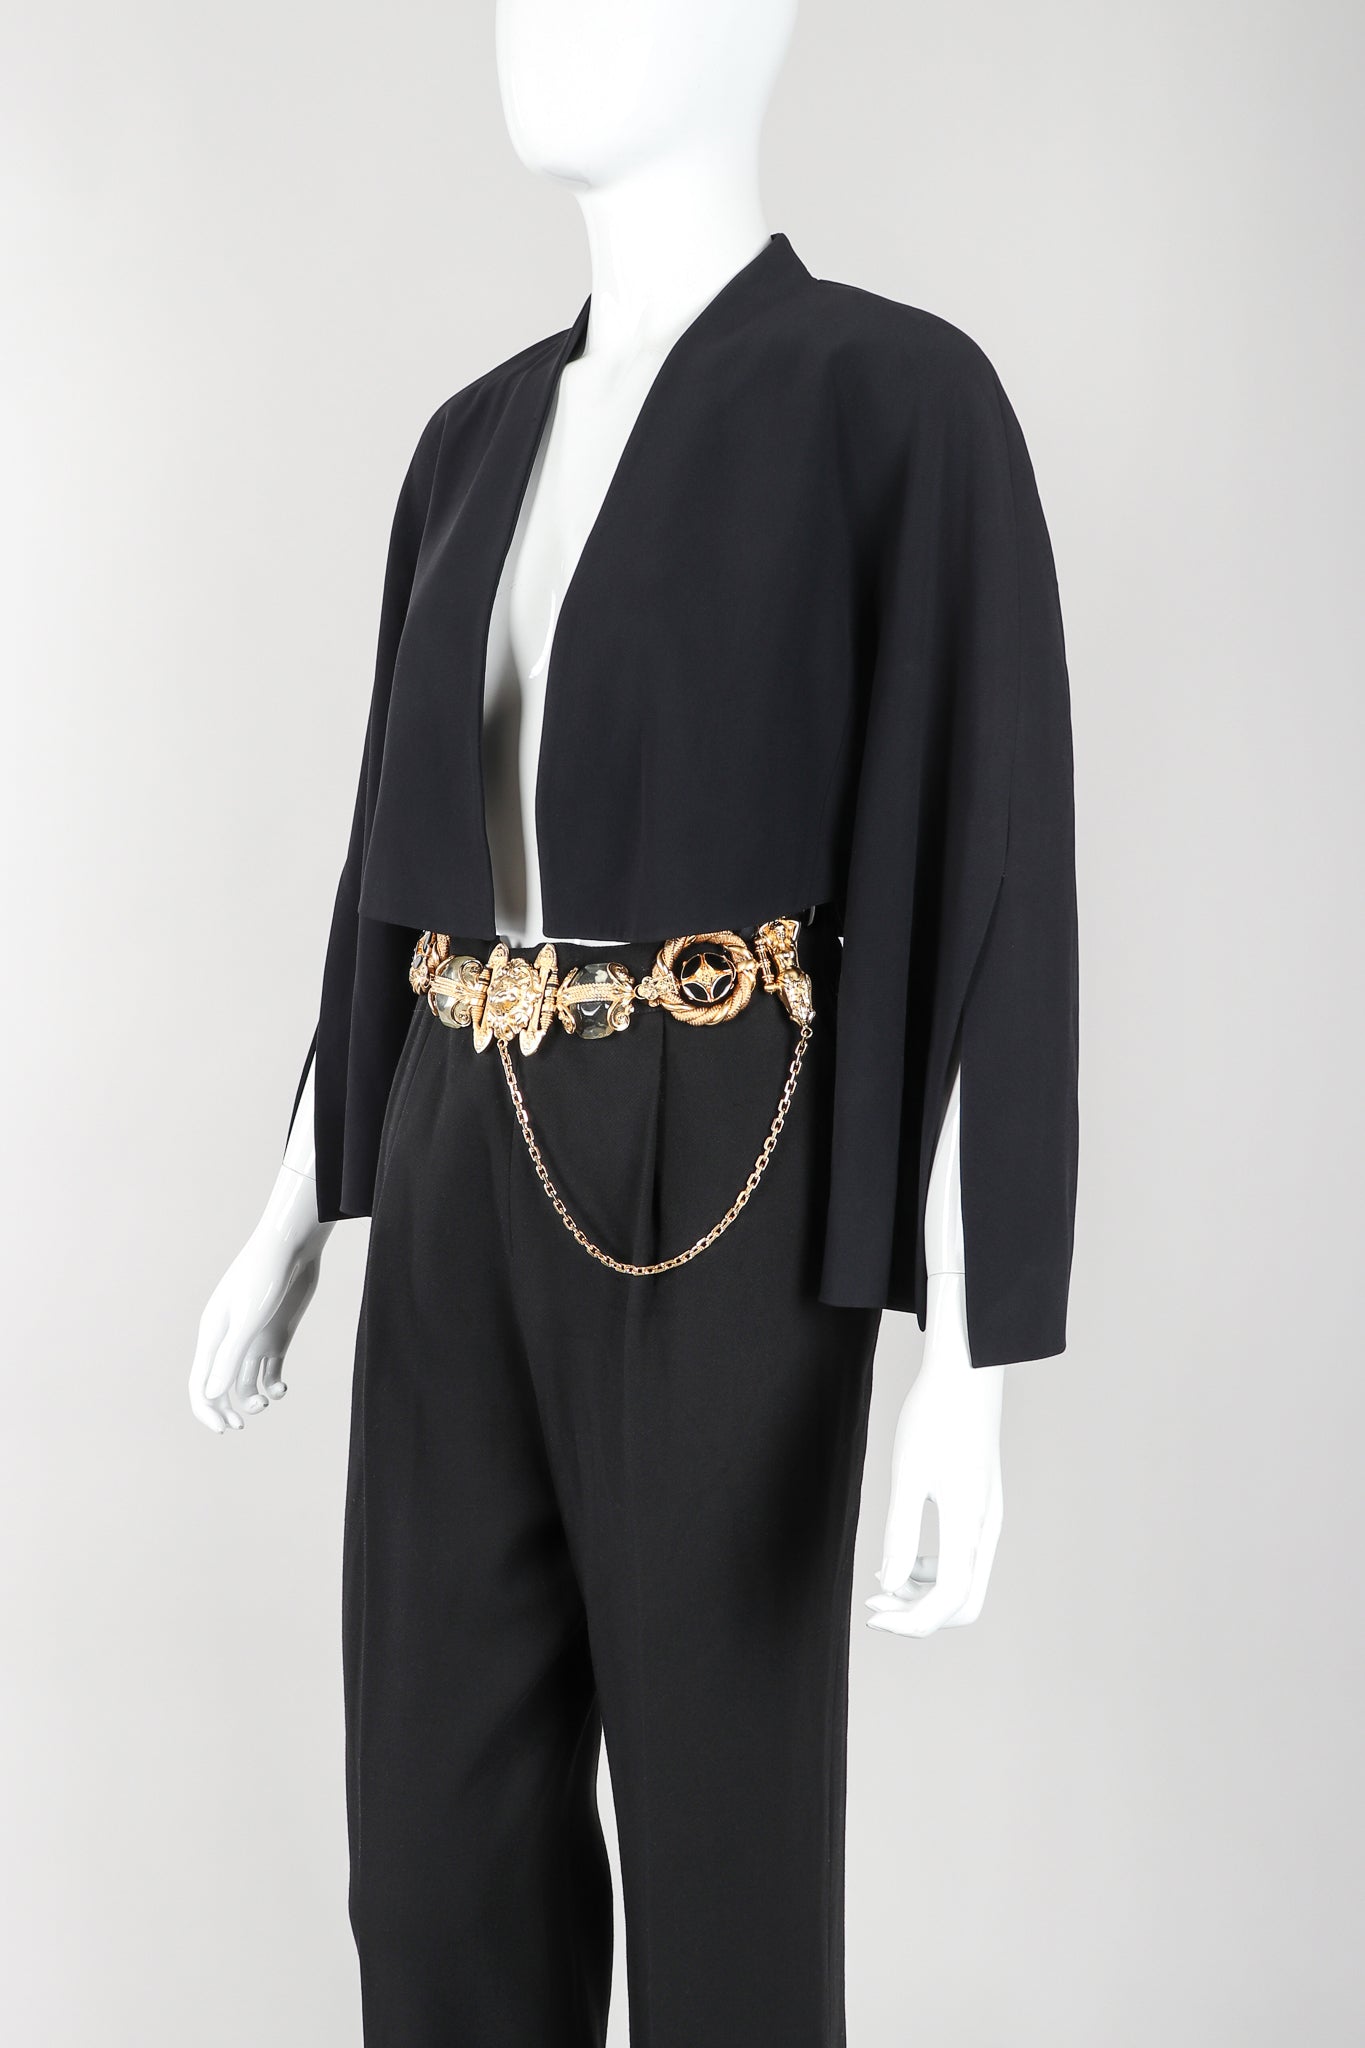 Recess Vintage Gianfranco Ferre Black Jacket, Belted Pant & Suspender Set on Mannequin